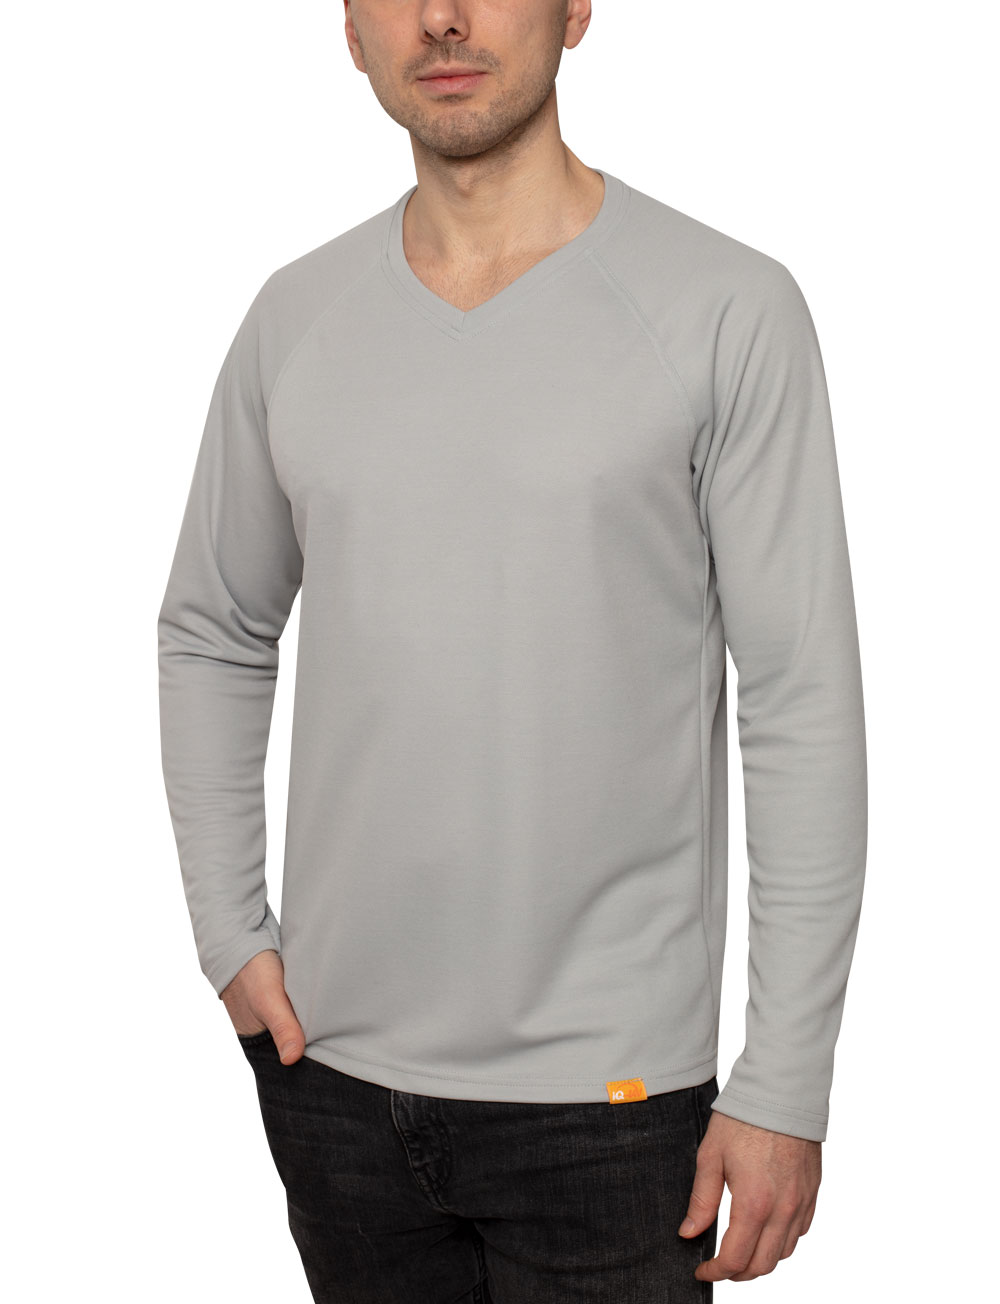 UV langarm Shirt für Herren Outdoor V-Ausschnitt grau angezogen